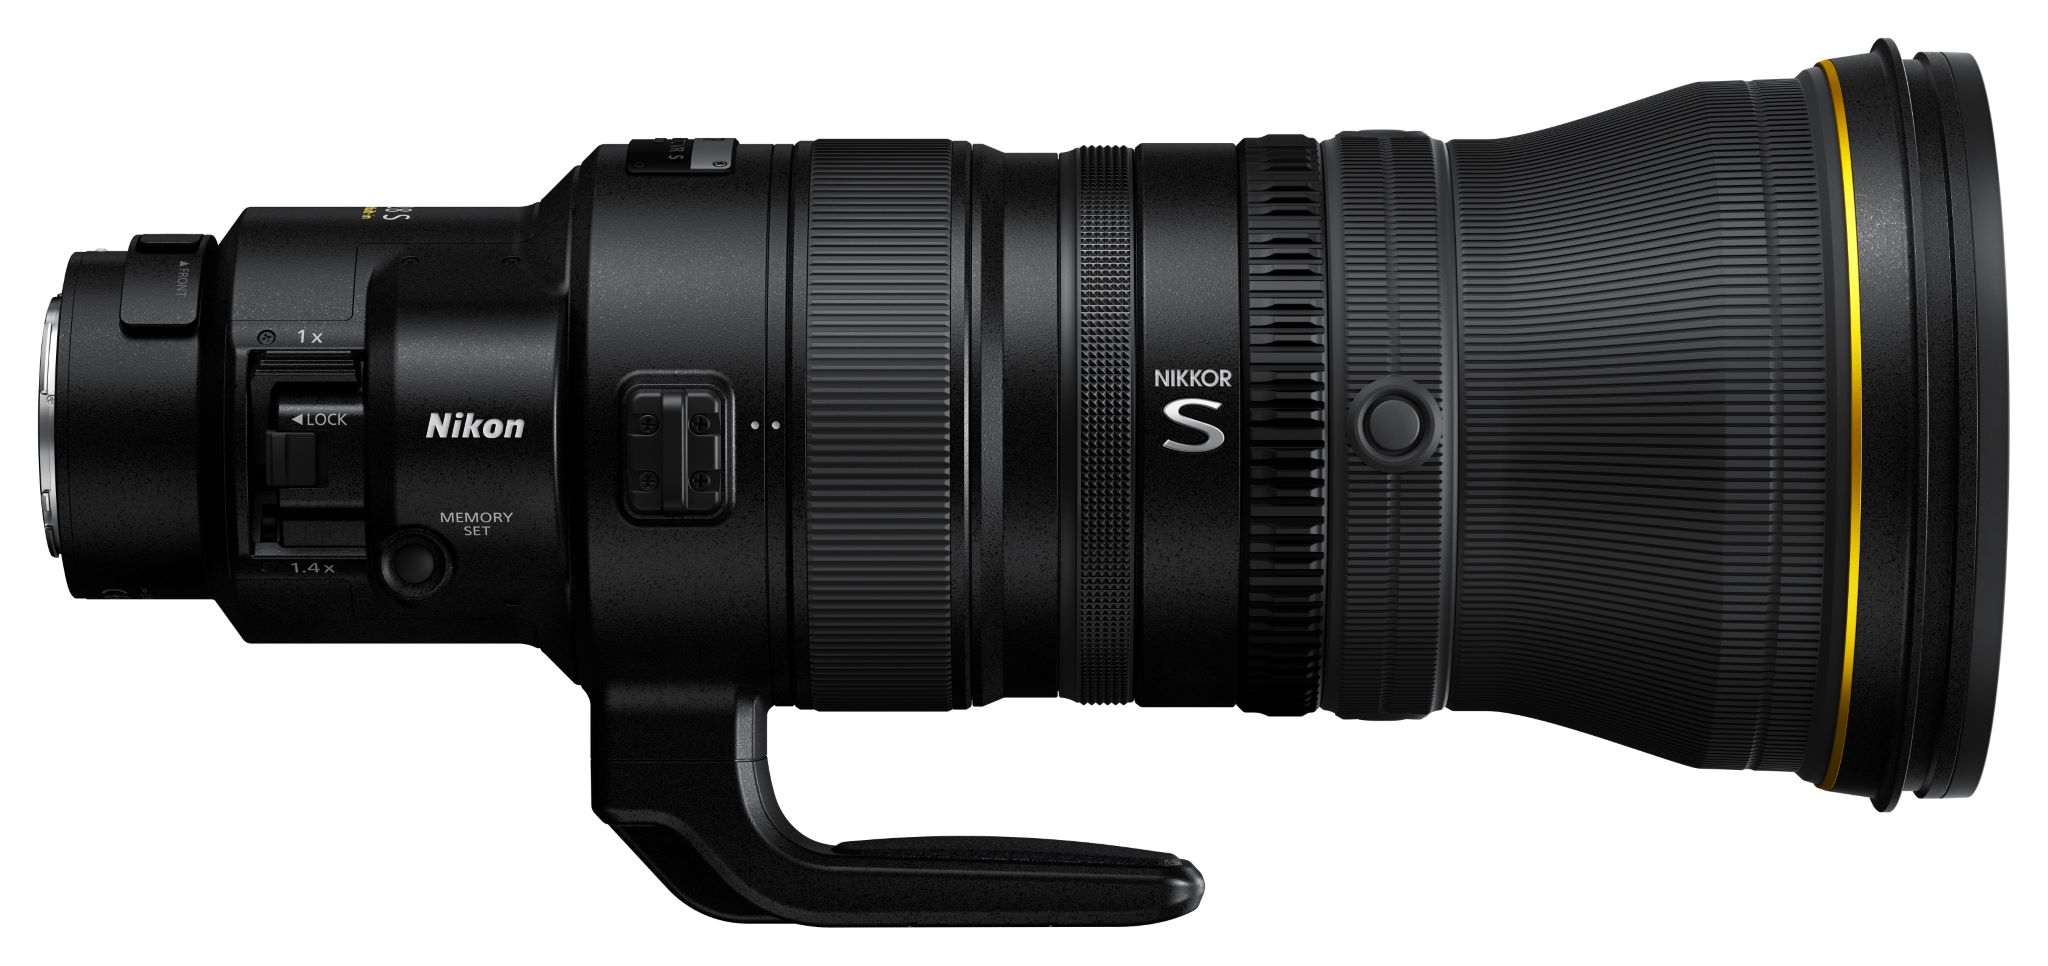 Nikon ra mắt ống kính 400mm F2.8 TC VR S dành cho full frame ngàm Z trị giá 14,000 USD